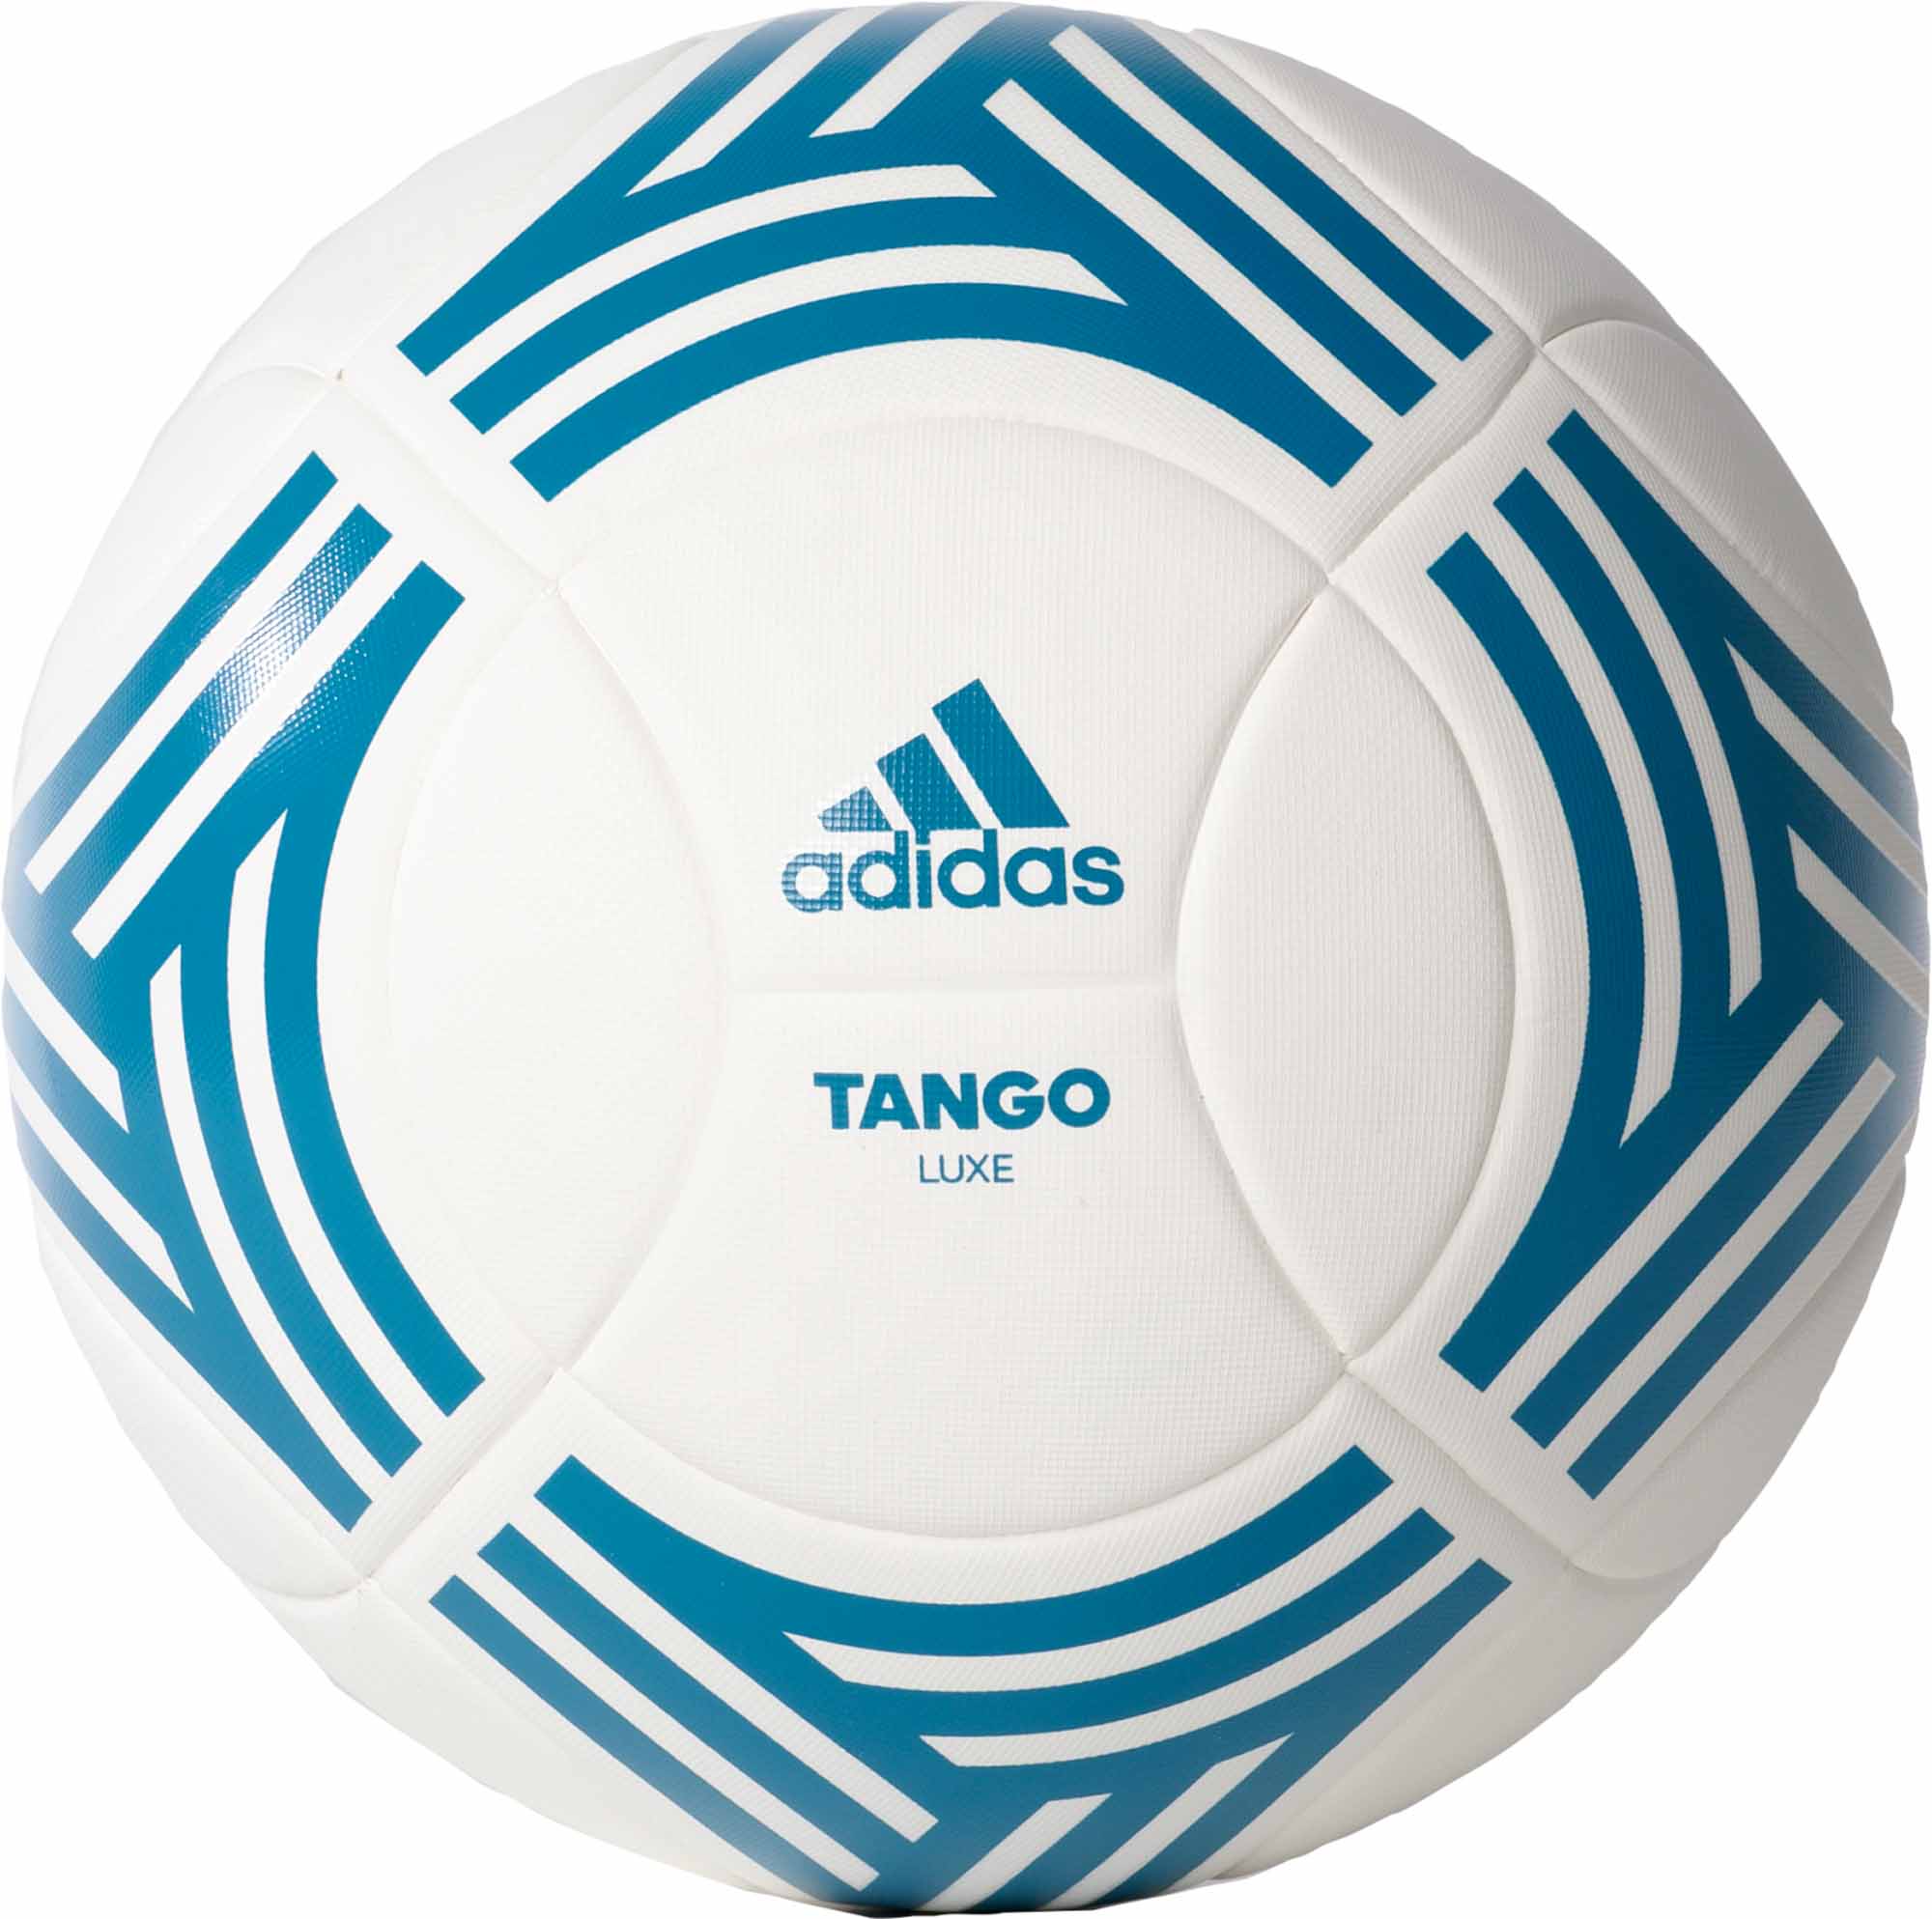 https://www.soccerpro.com/wp-content/uploads/2018/01/bp8684_adidas_tango_lux_match_ball_01.jpg